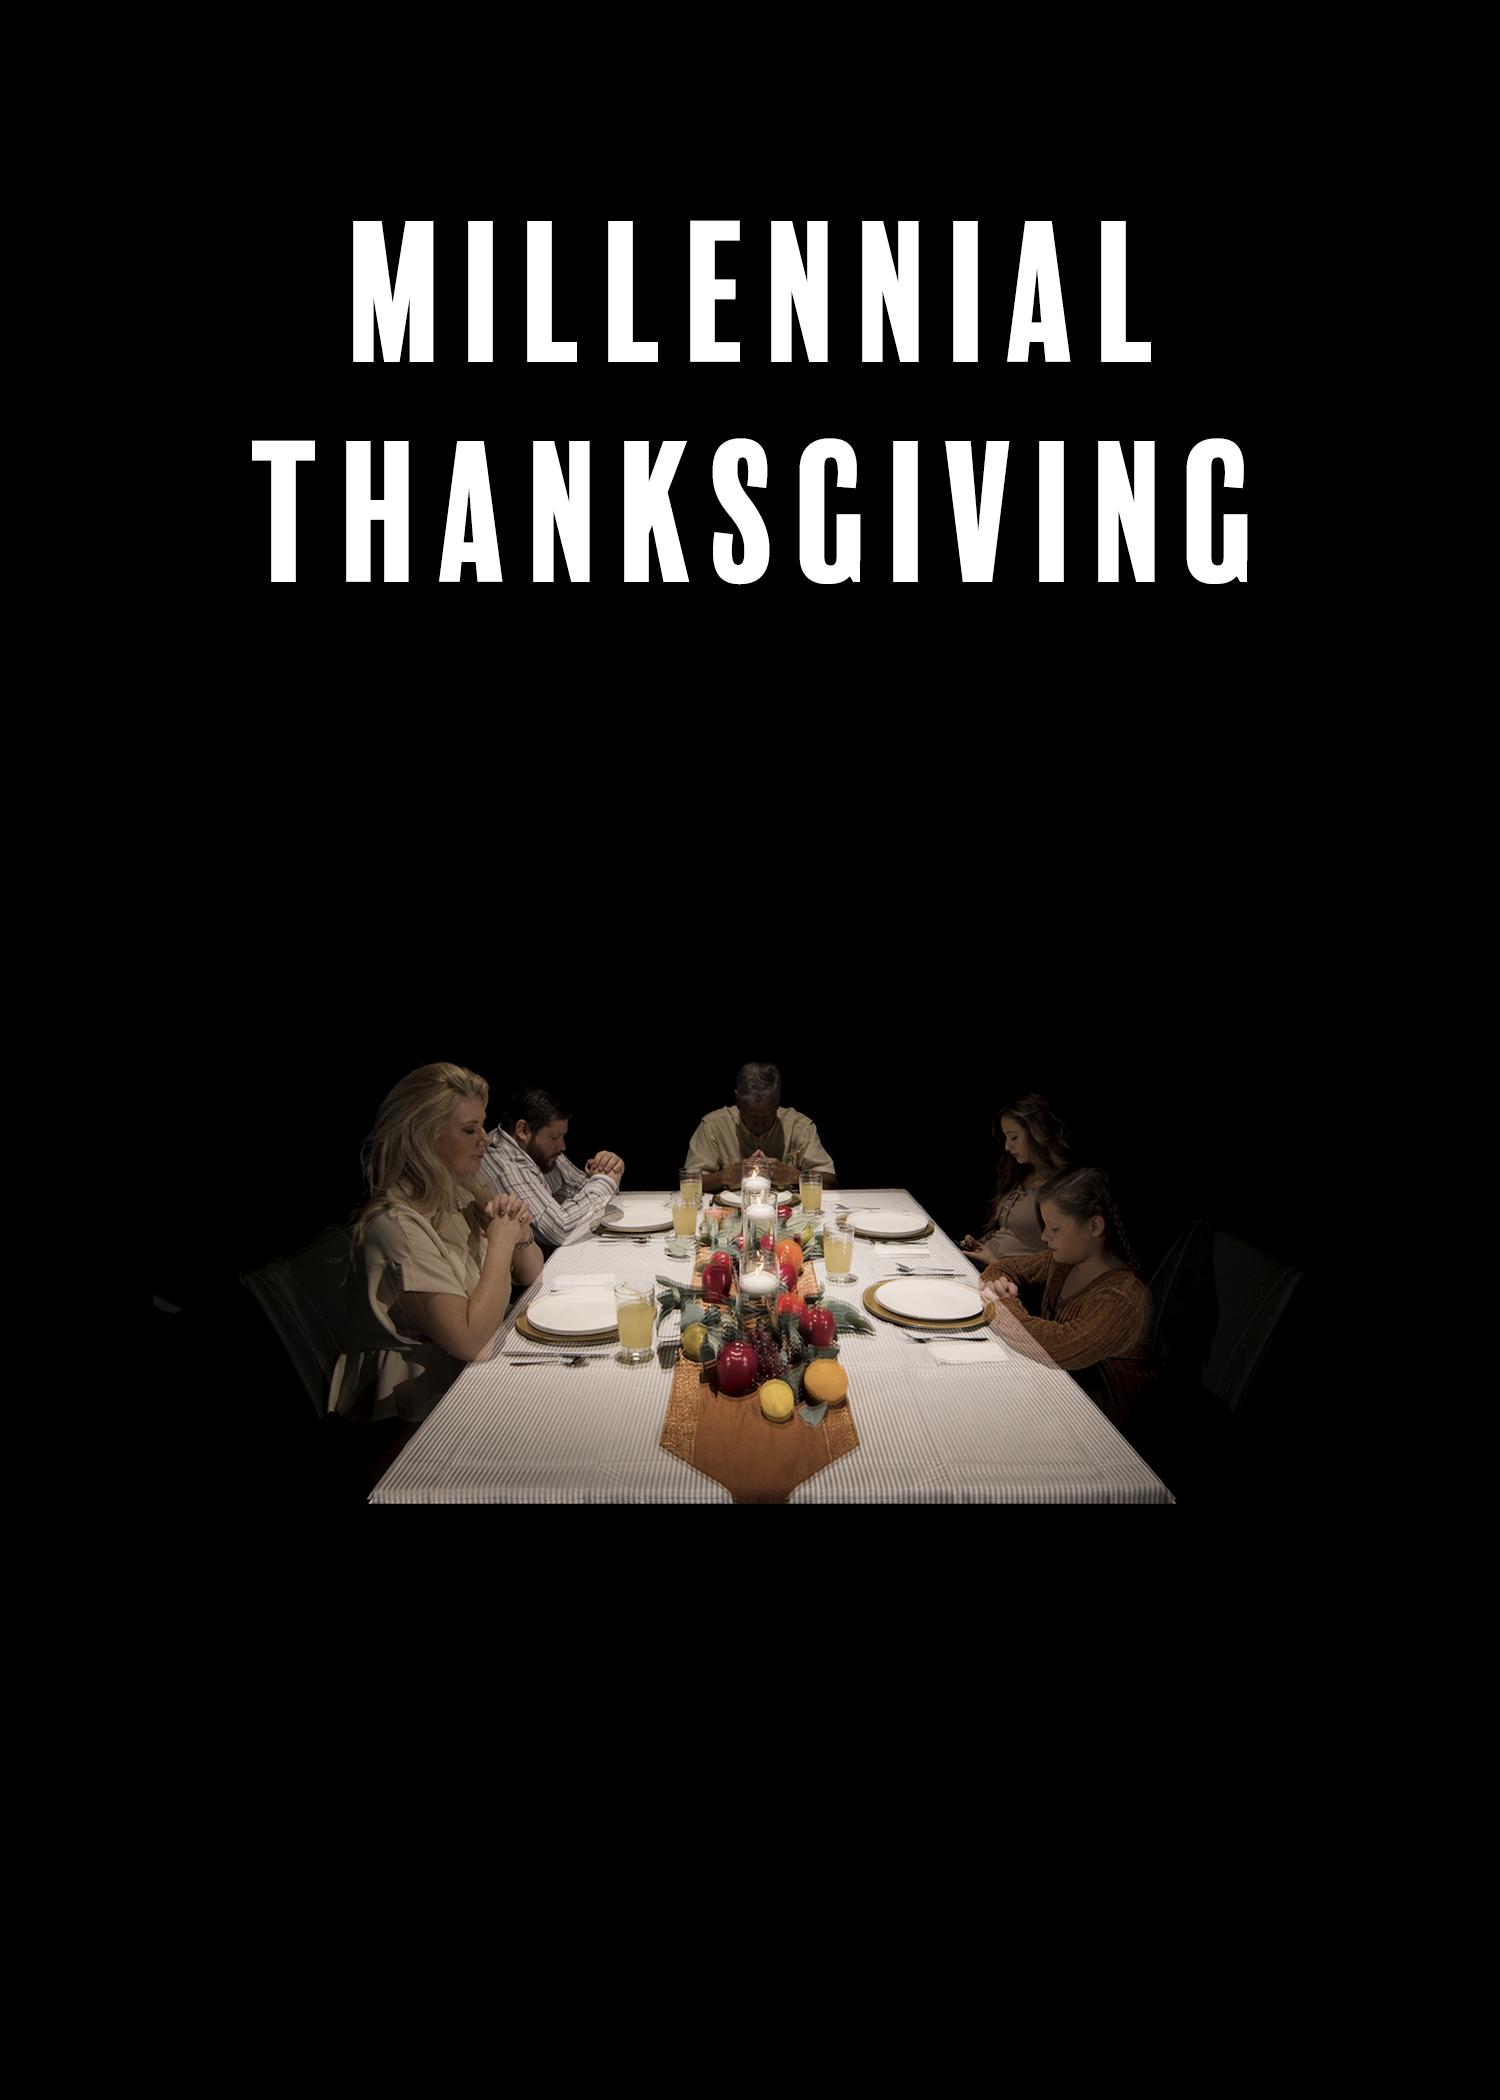 Millennial Thanksgiving (2020)